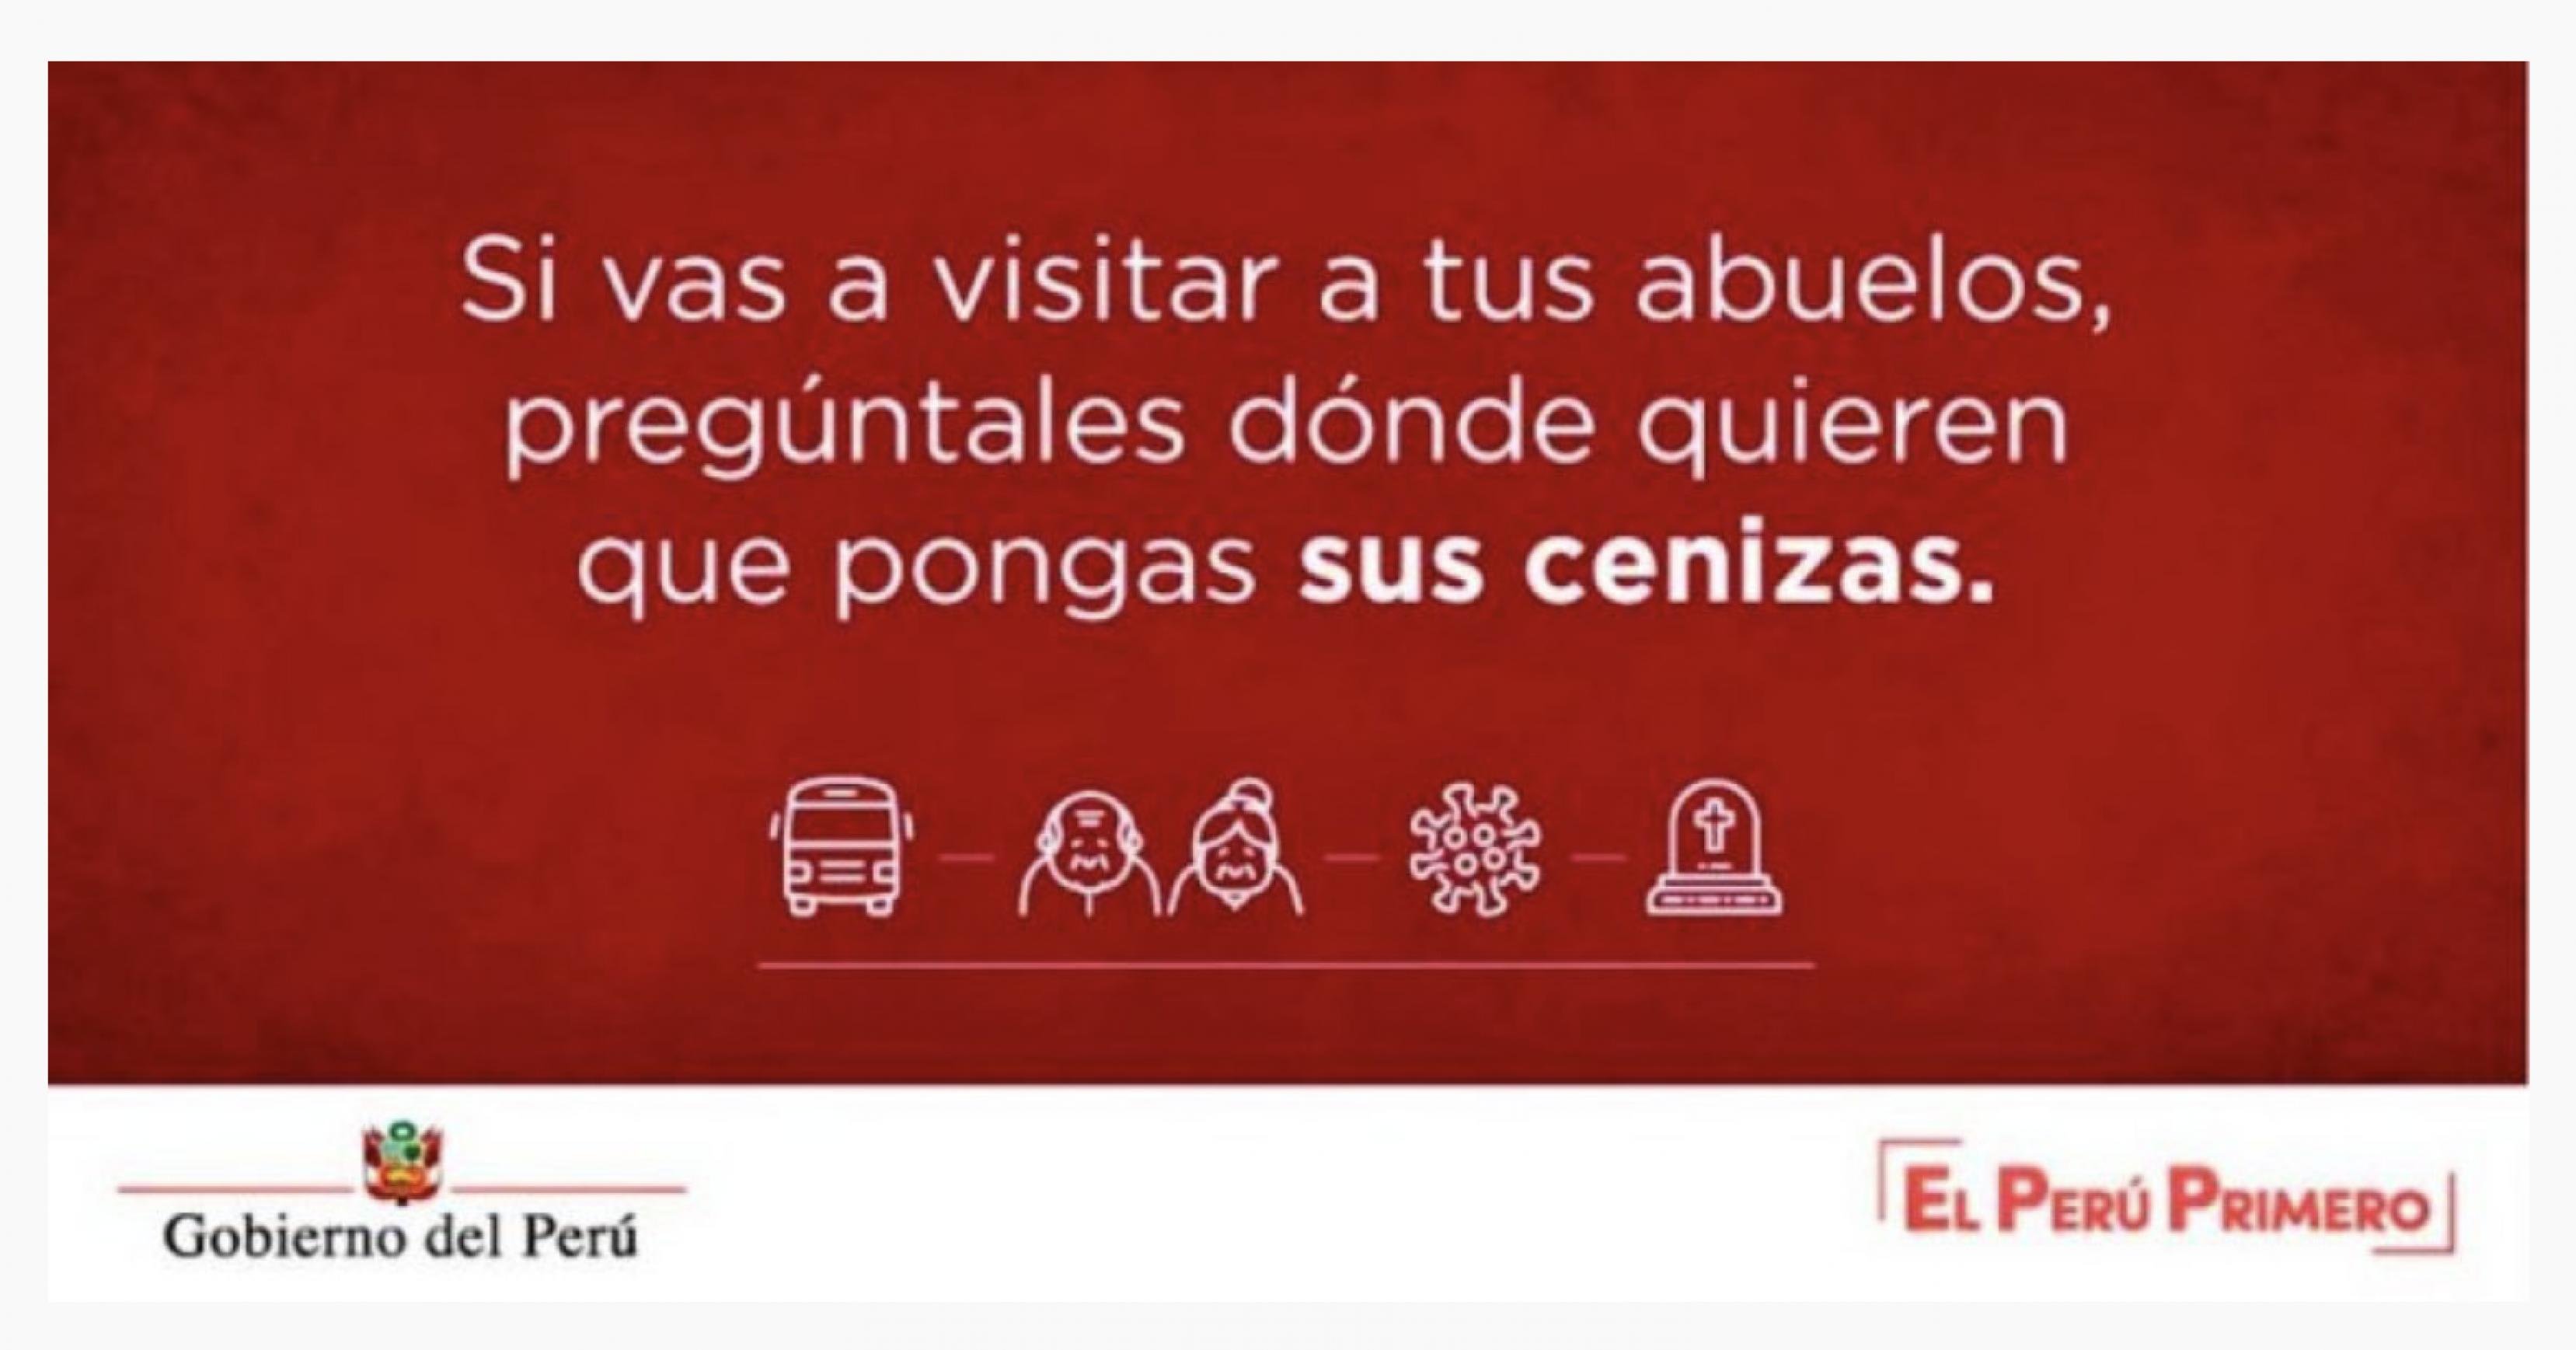 Das Foto zeigt einen Screenshot der Kampagne der peruanischen Regierung.